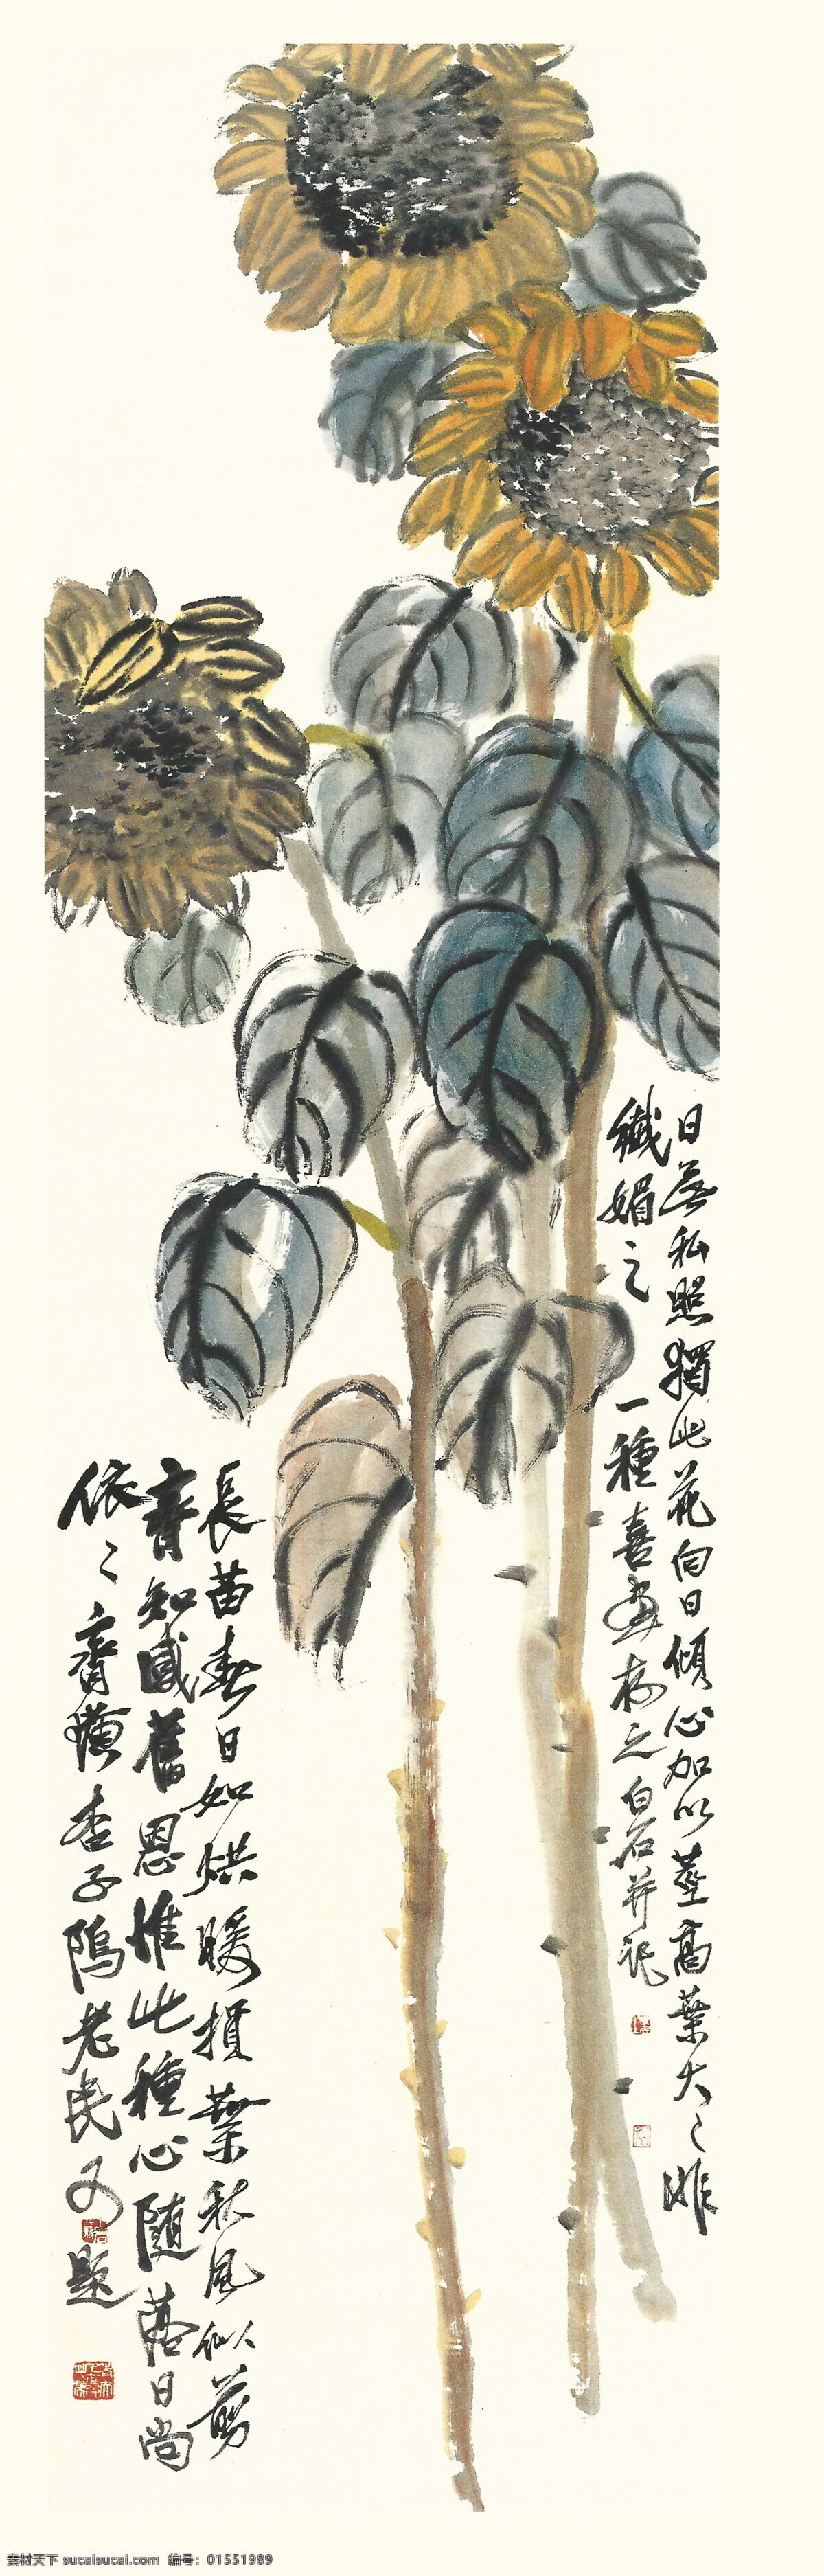 齐白石 书法 绘画 艺术 向日葵 静物 文化艺术 绘画书法